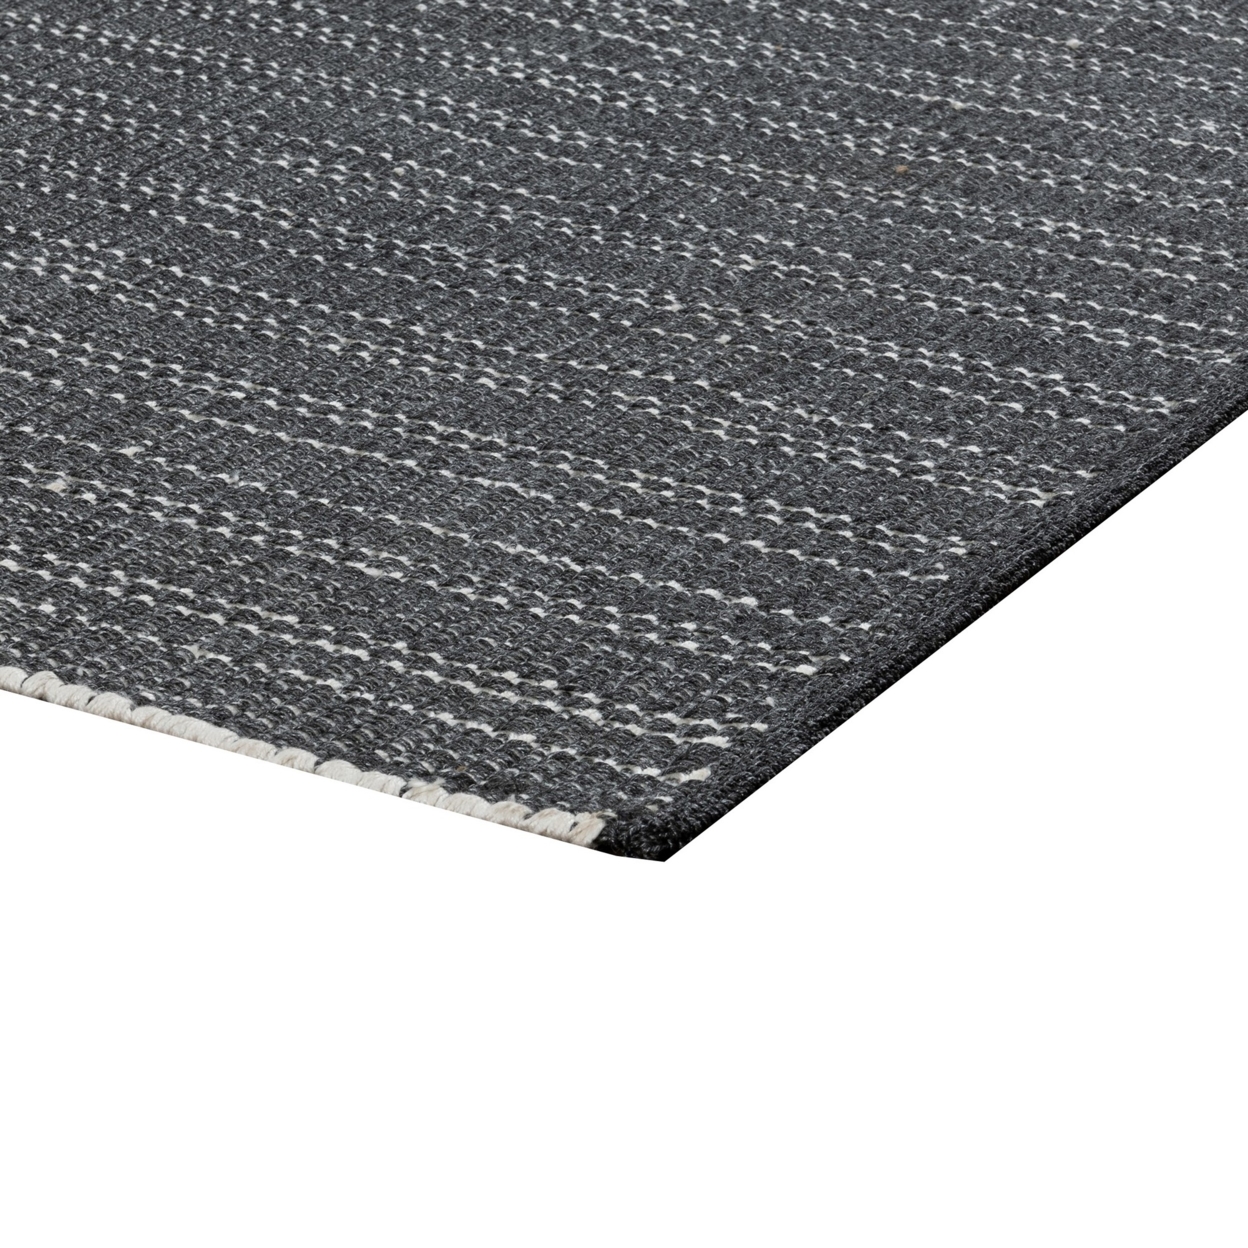 Leah 5 X 8 Indoor Outdoor Area Rug, Handwoven Classic Texture Charcoal Gray- Saltoro Sherpi